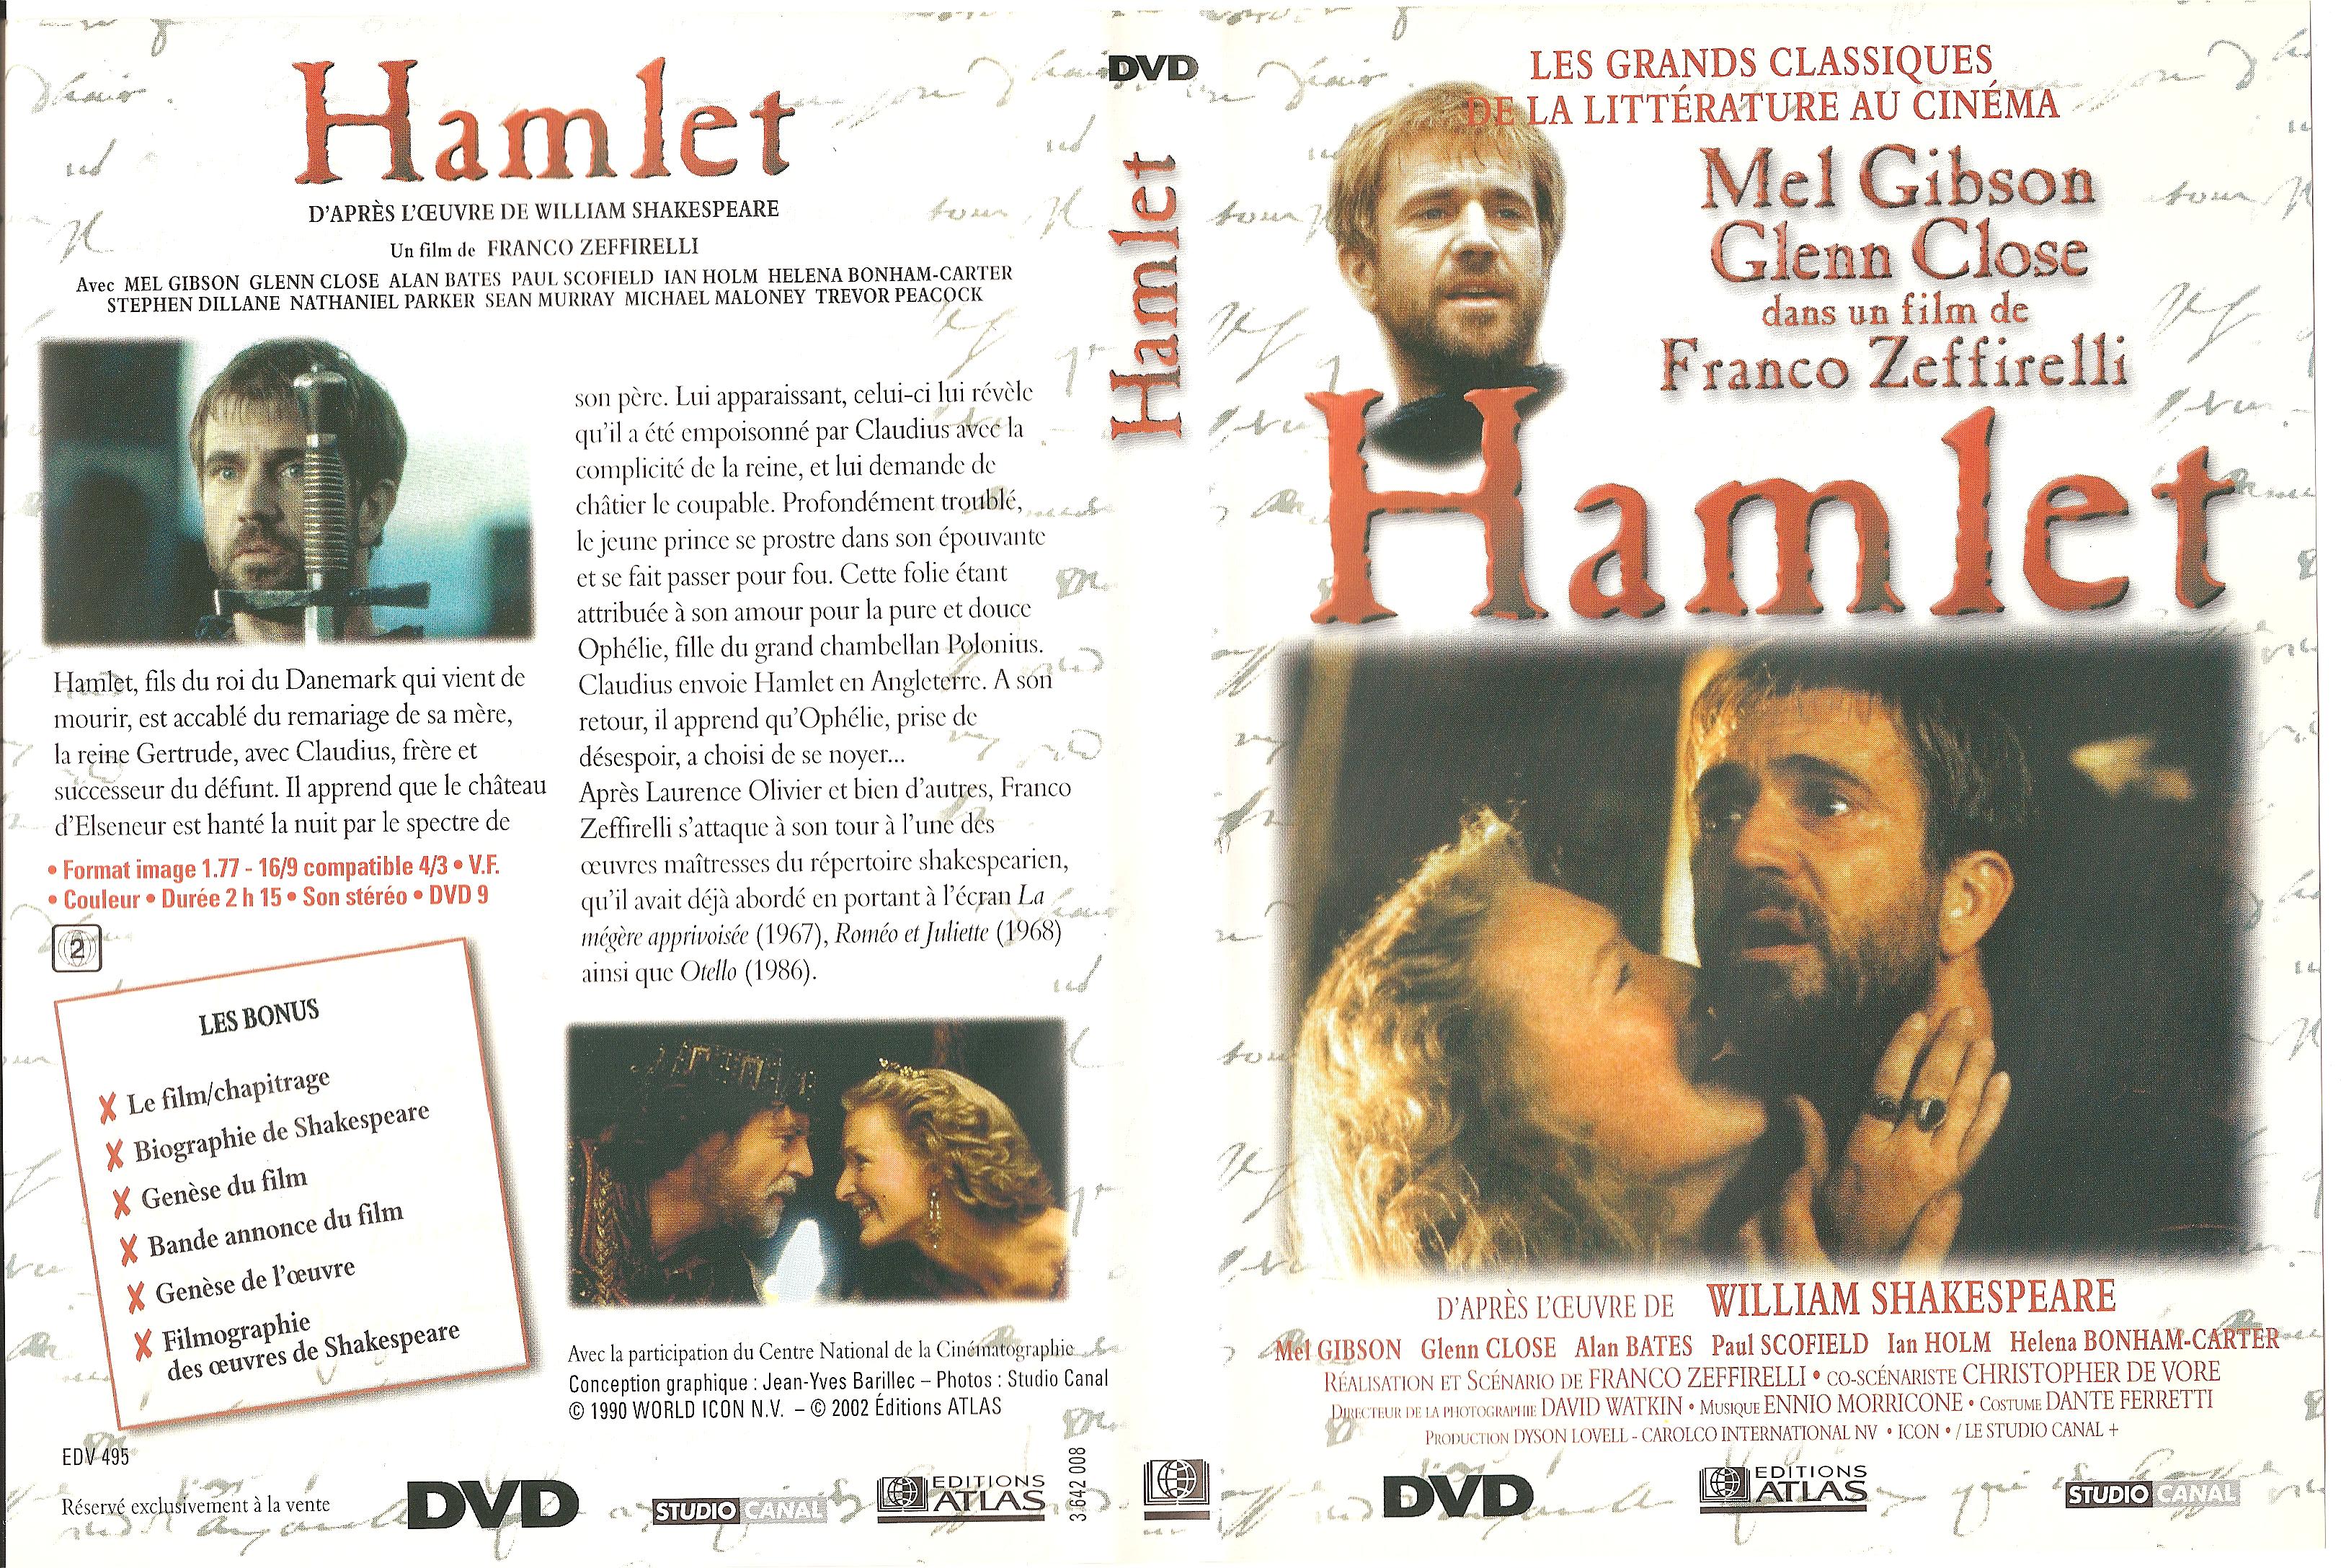 Jaquette DVD Hamlet (Mel Gibson)